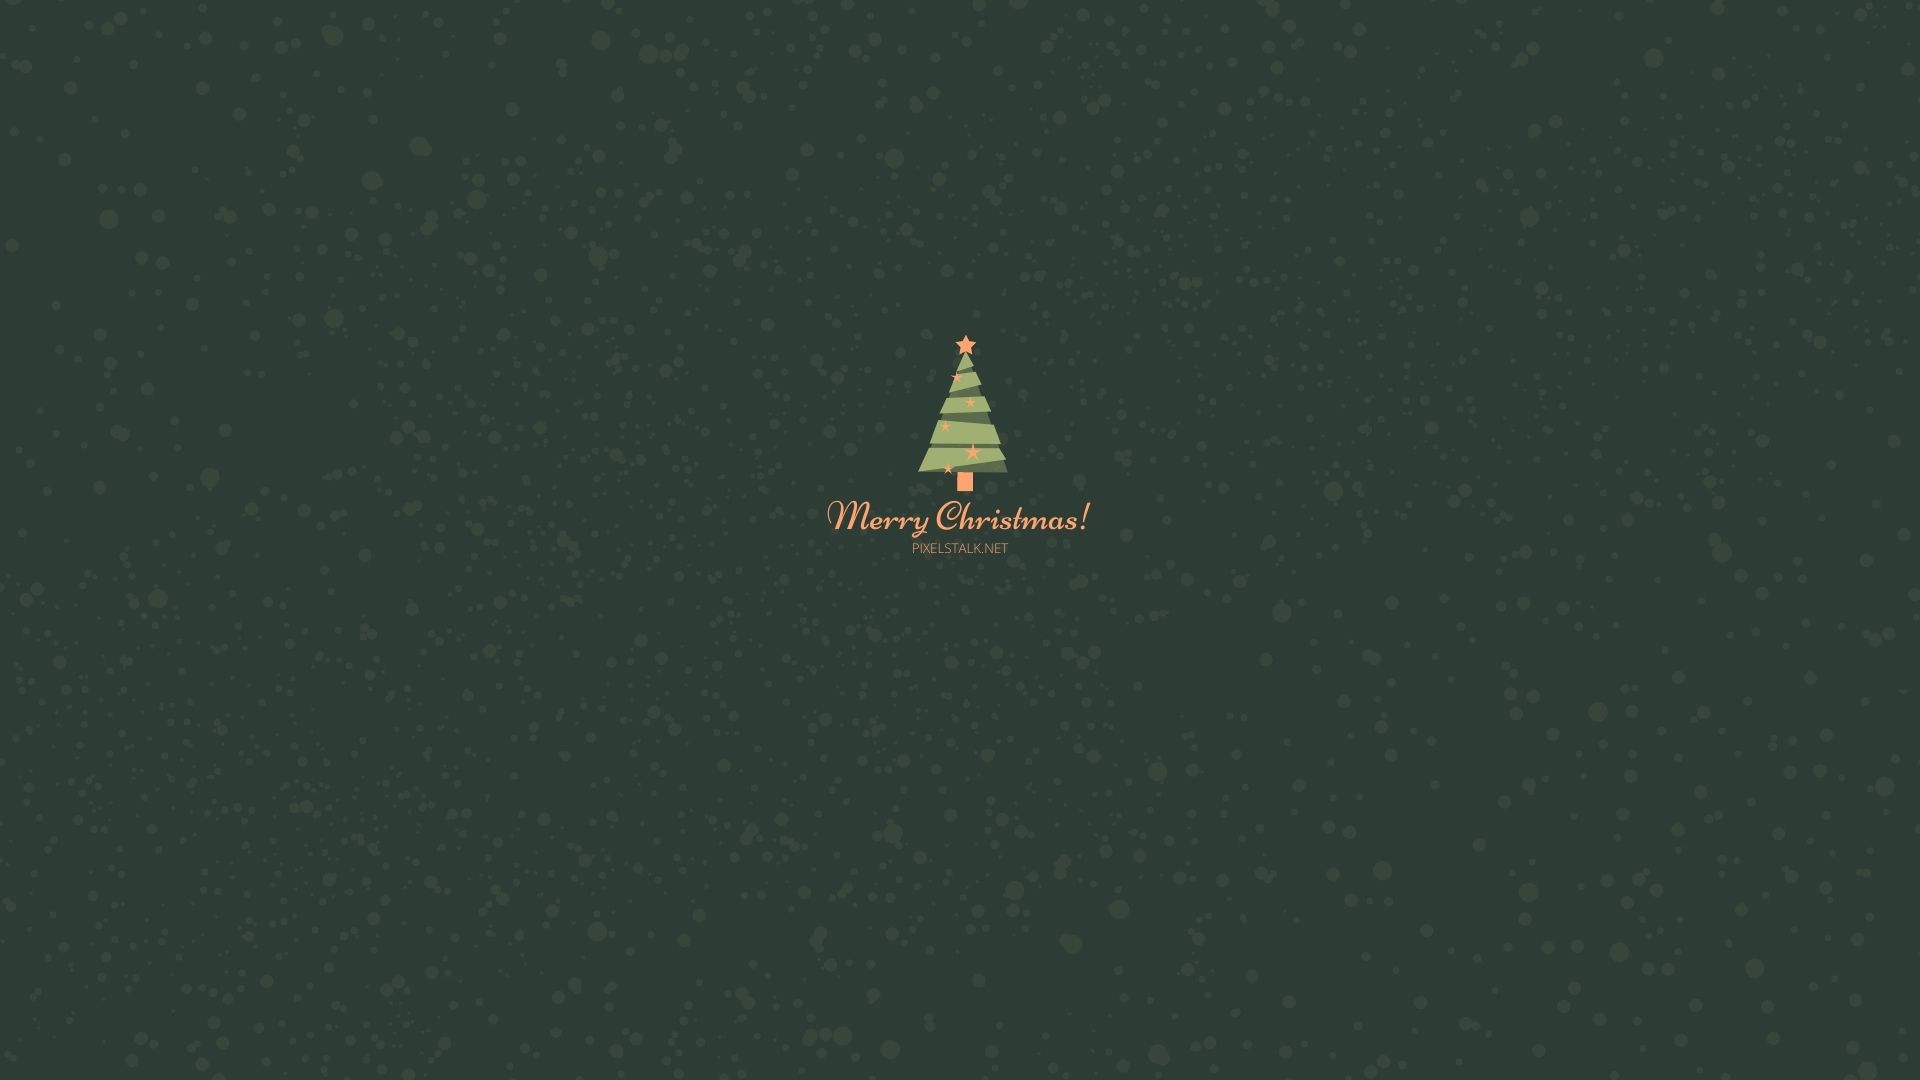 Minimalist Christmas Images  Free Download on Freepik